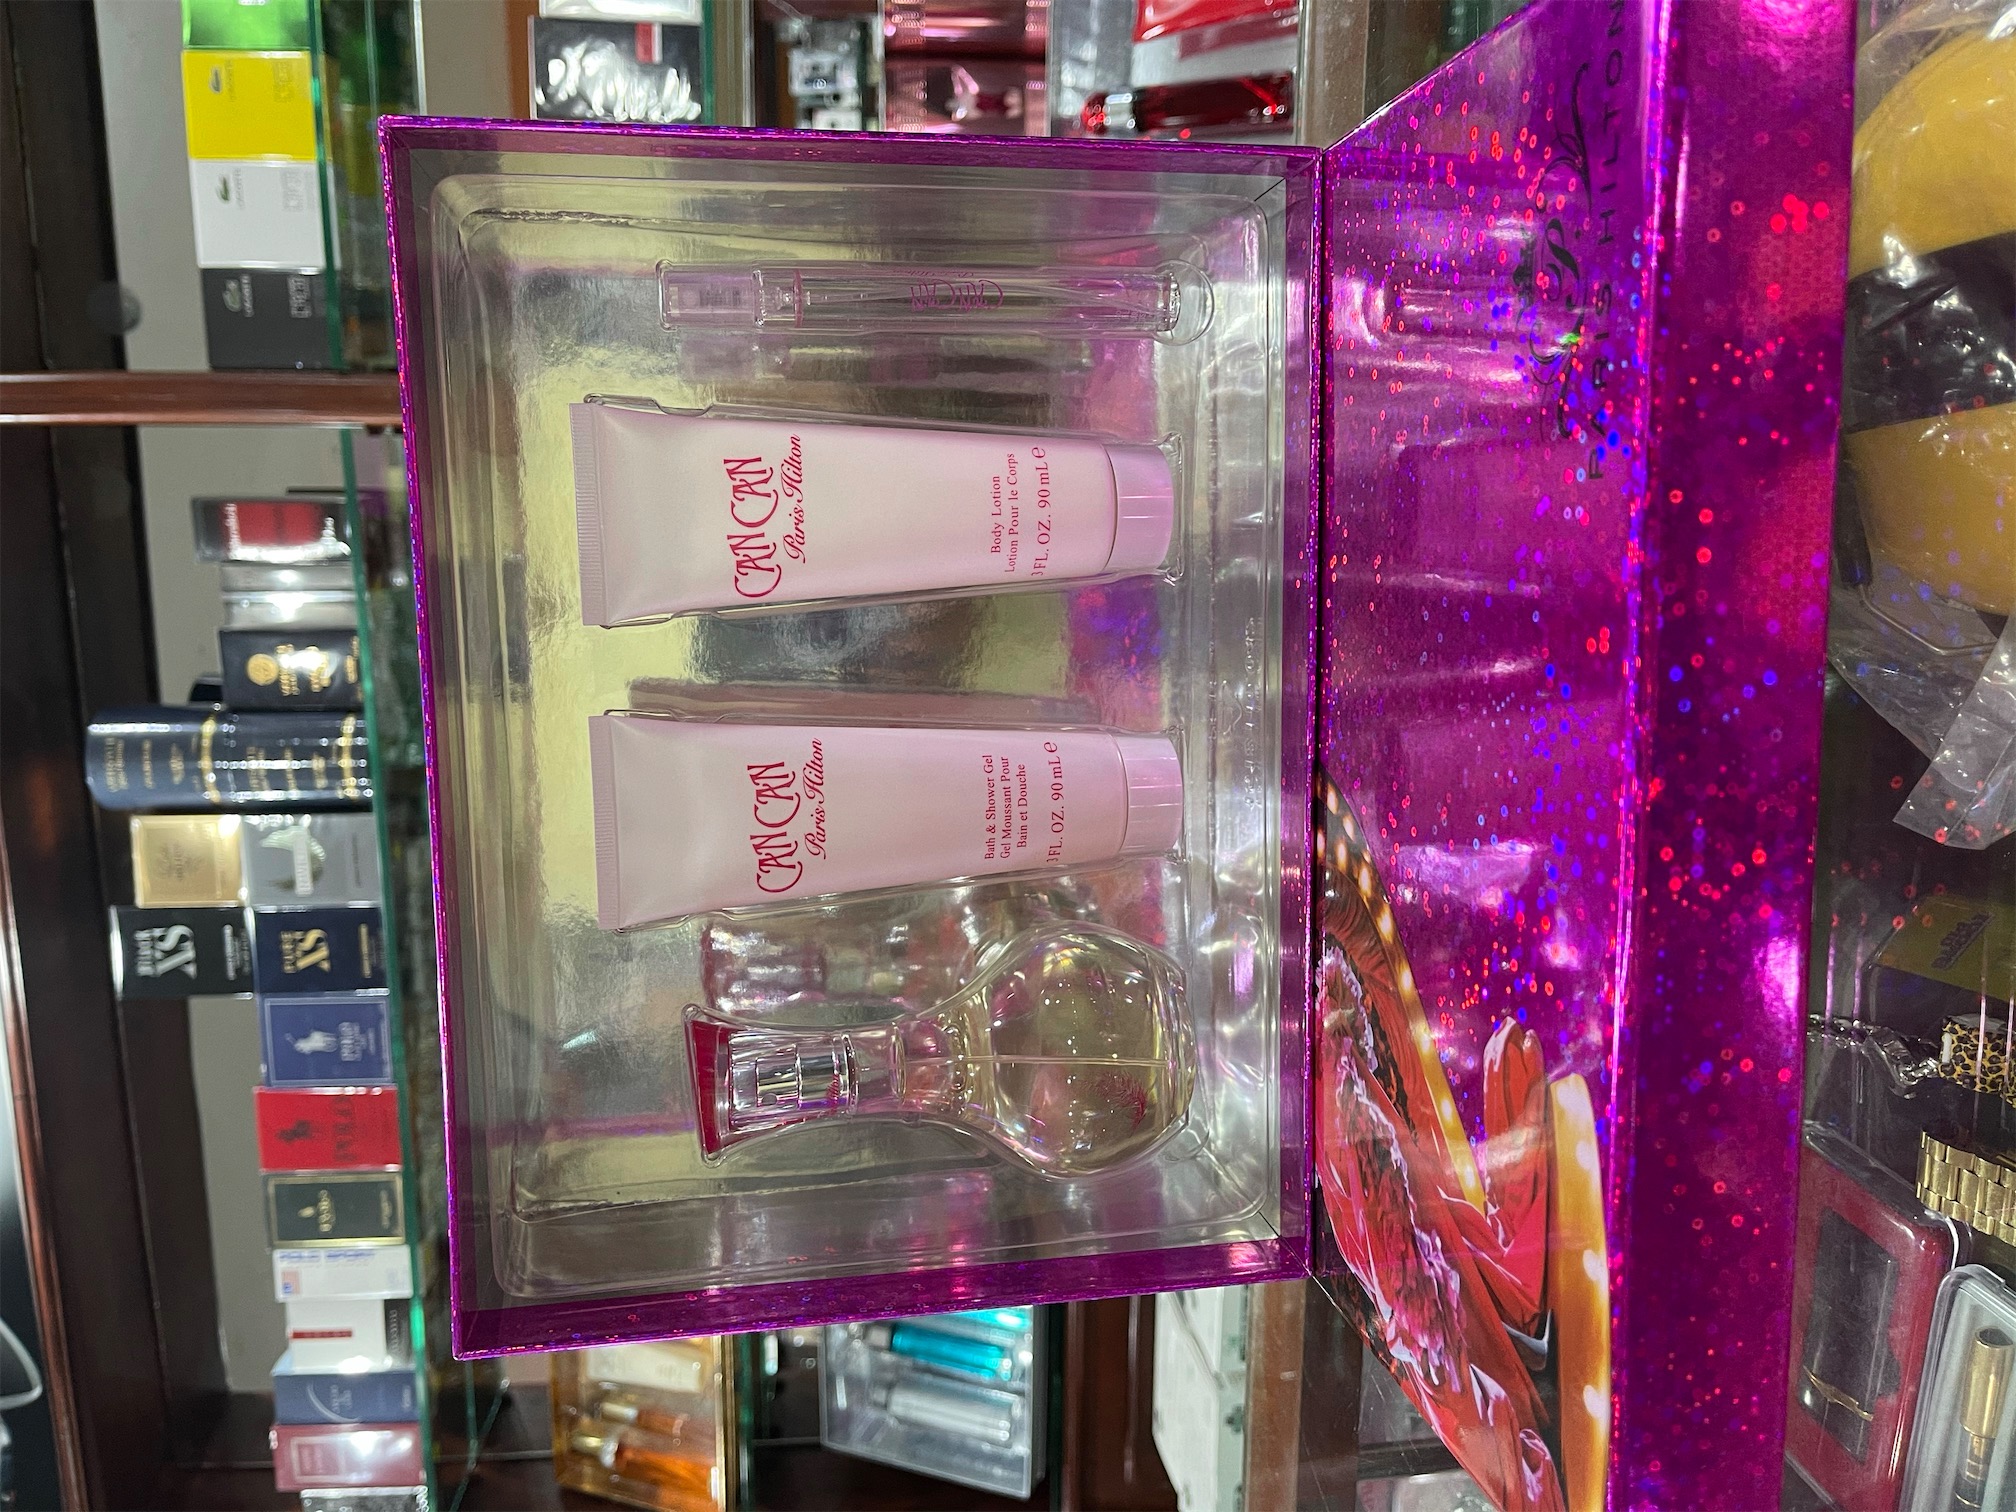 salud y belleza - Set perfume Can Can de Paris Hilton. Originales. AL POR MAYOR Y AL DETALLE 1